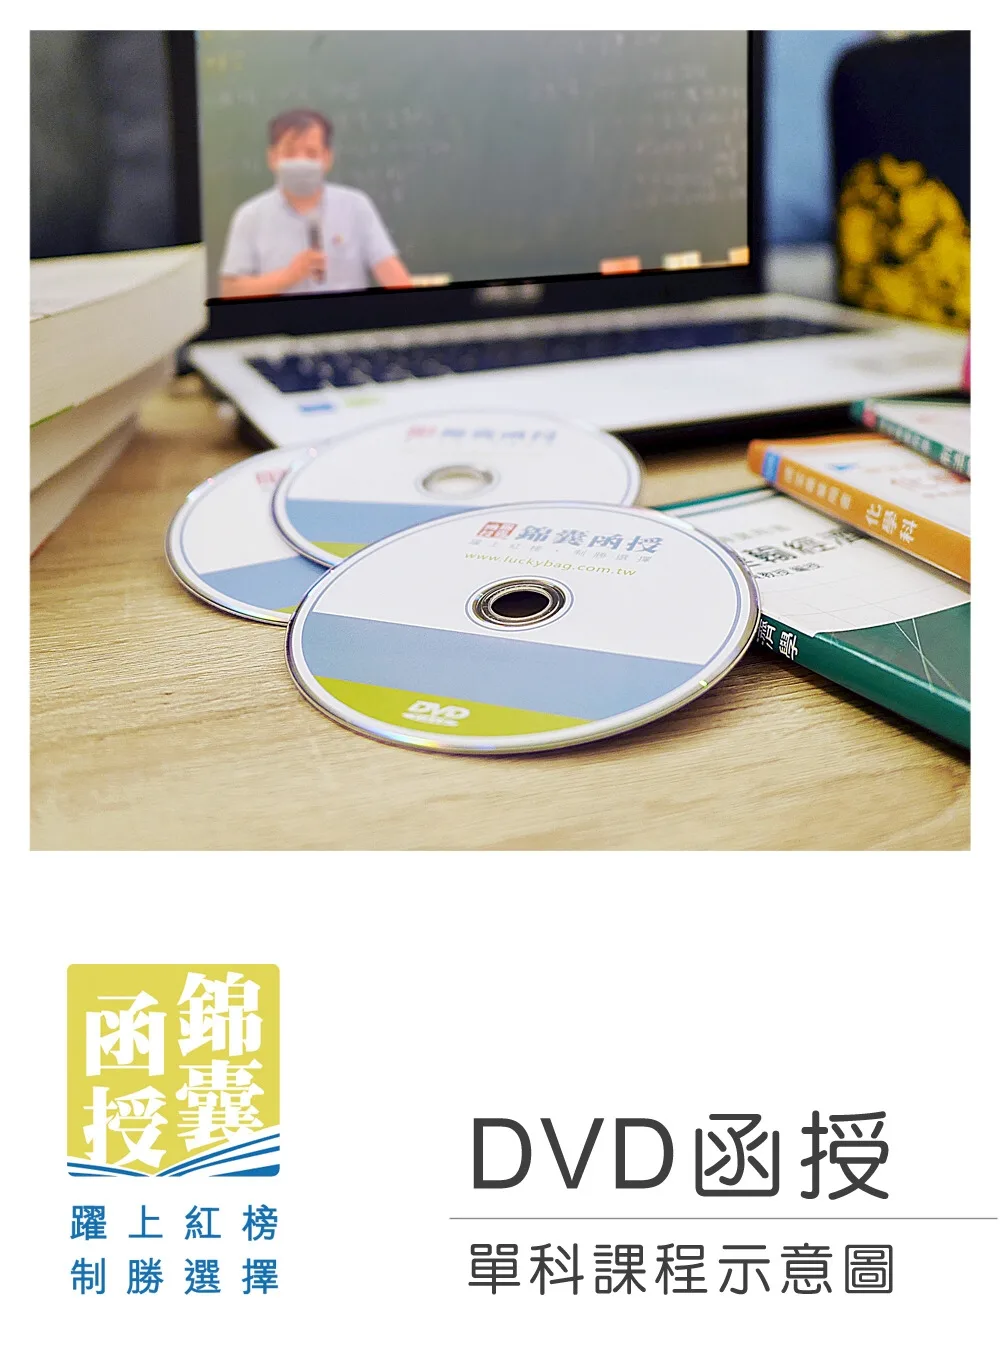 【DVD函授】入出國及移民法規：單科課程(112版)